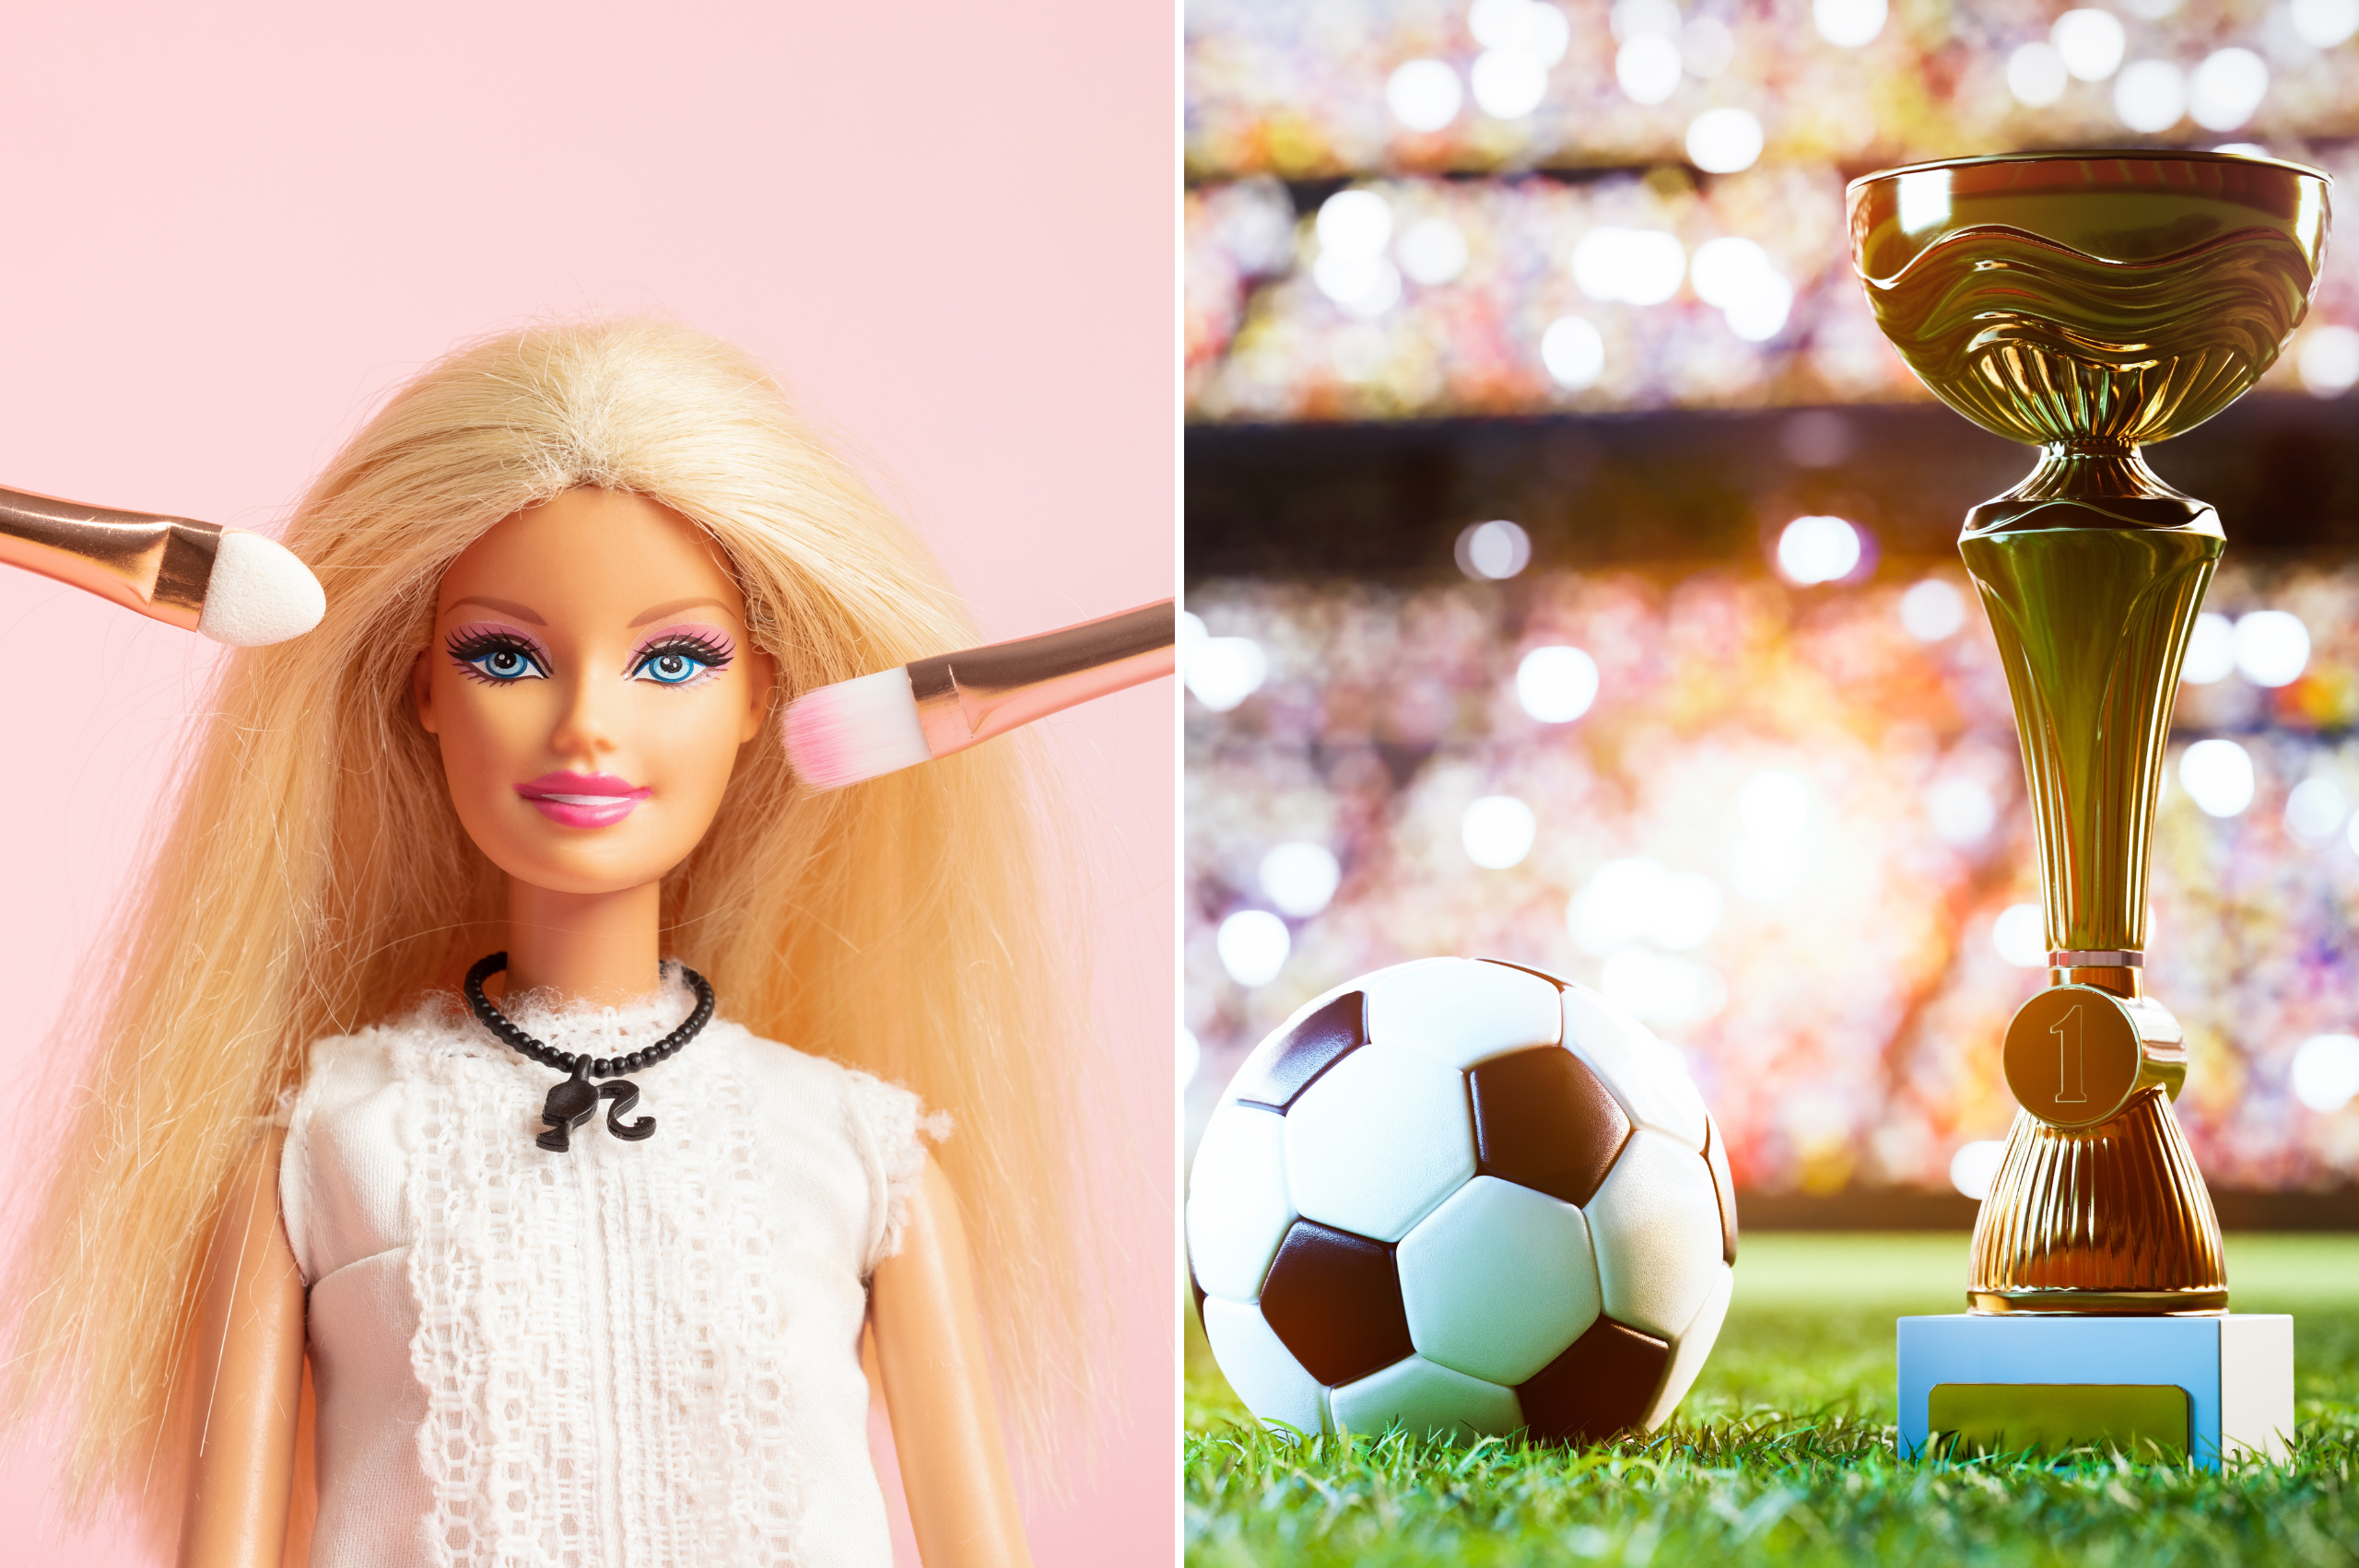 Barbie-vs.-Seleccion-Femenina-de-Futbol-de-Espana-Un-Duelo-en-la-Conversacion-Social